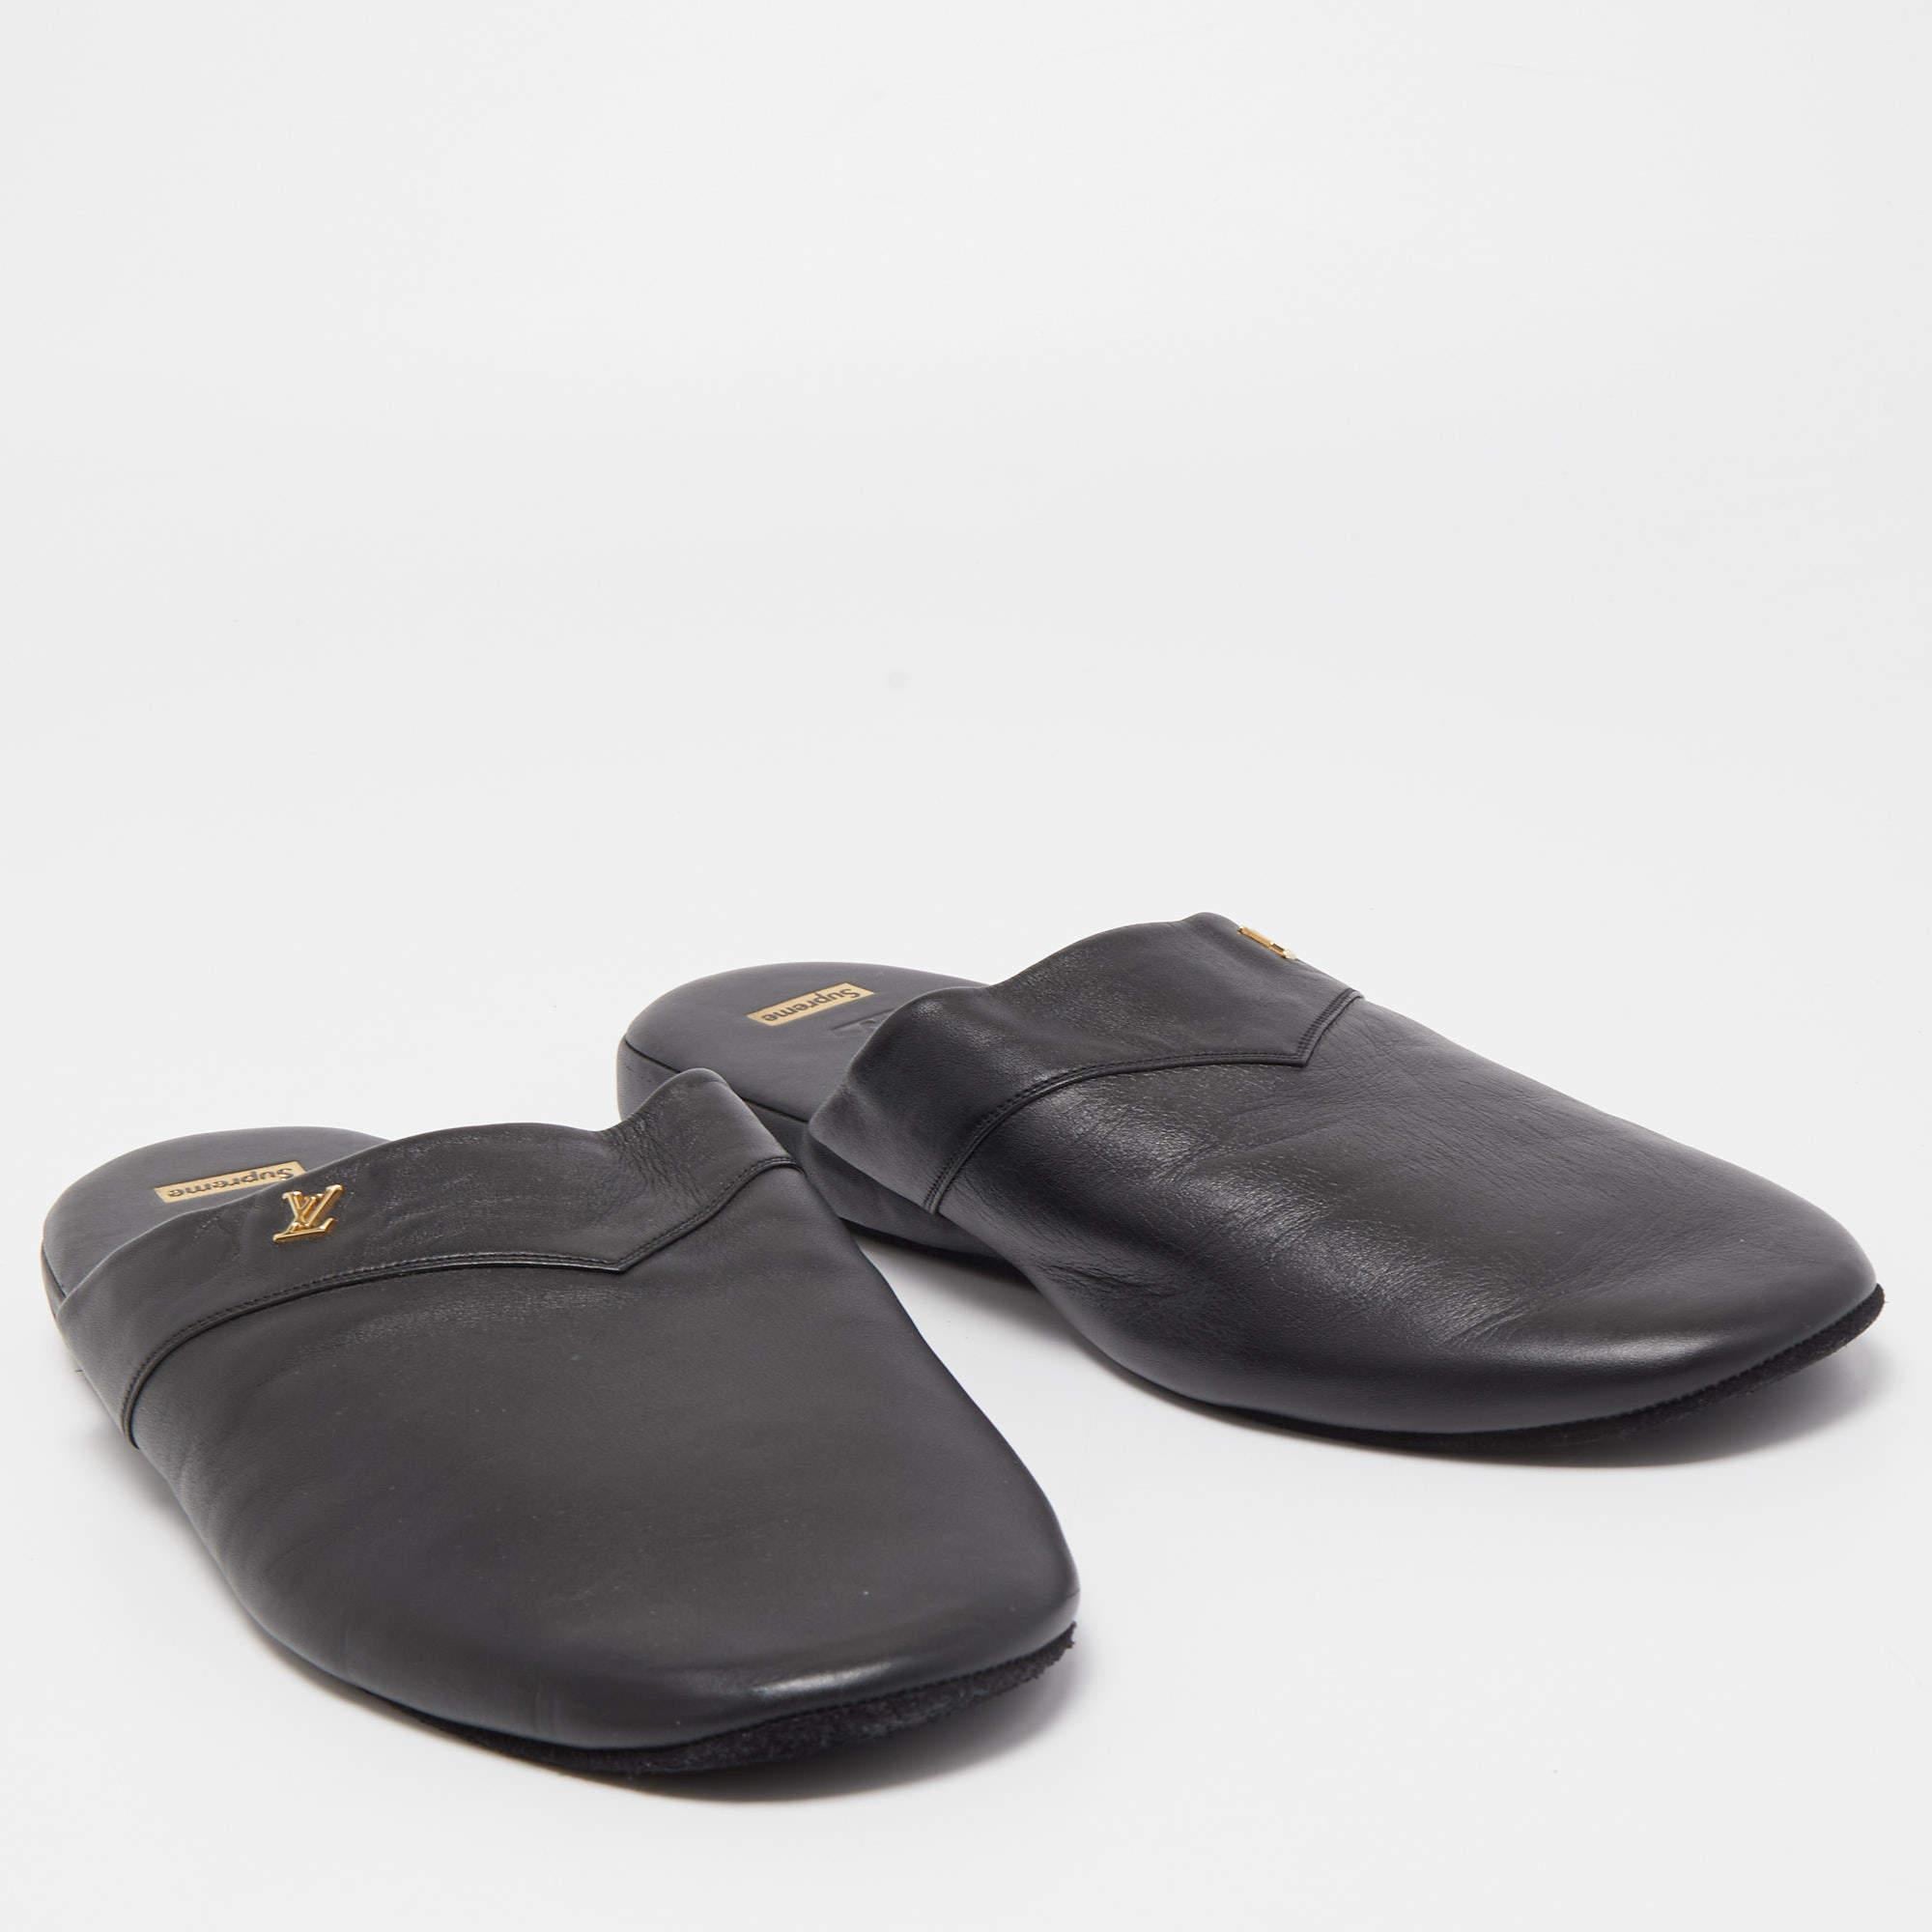 Men's Louis Vuitton x Supreme Black Leather Hugh Mule Flats Size 42